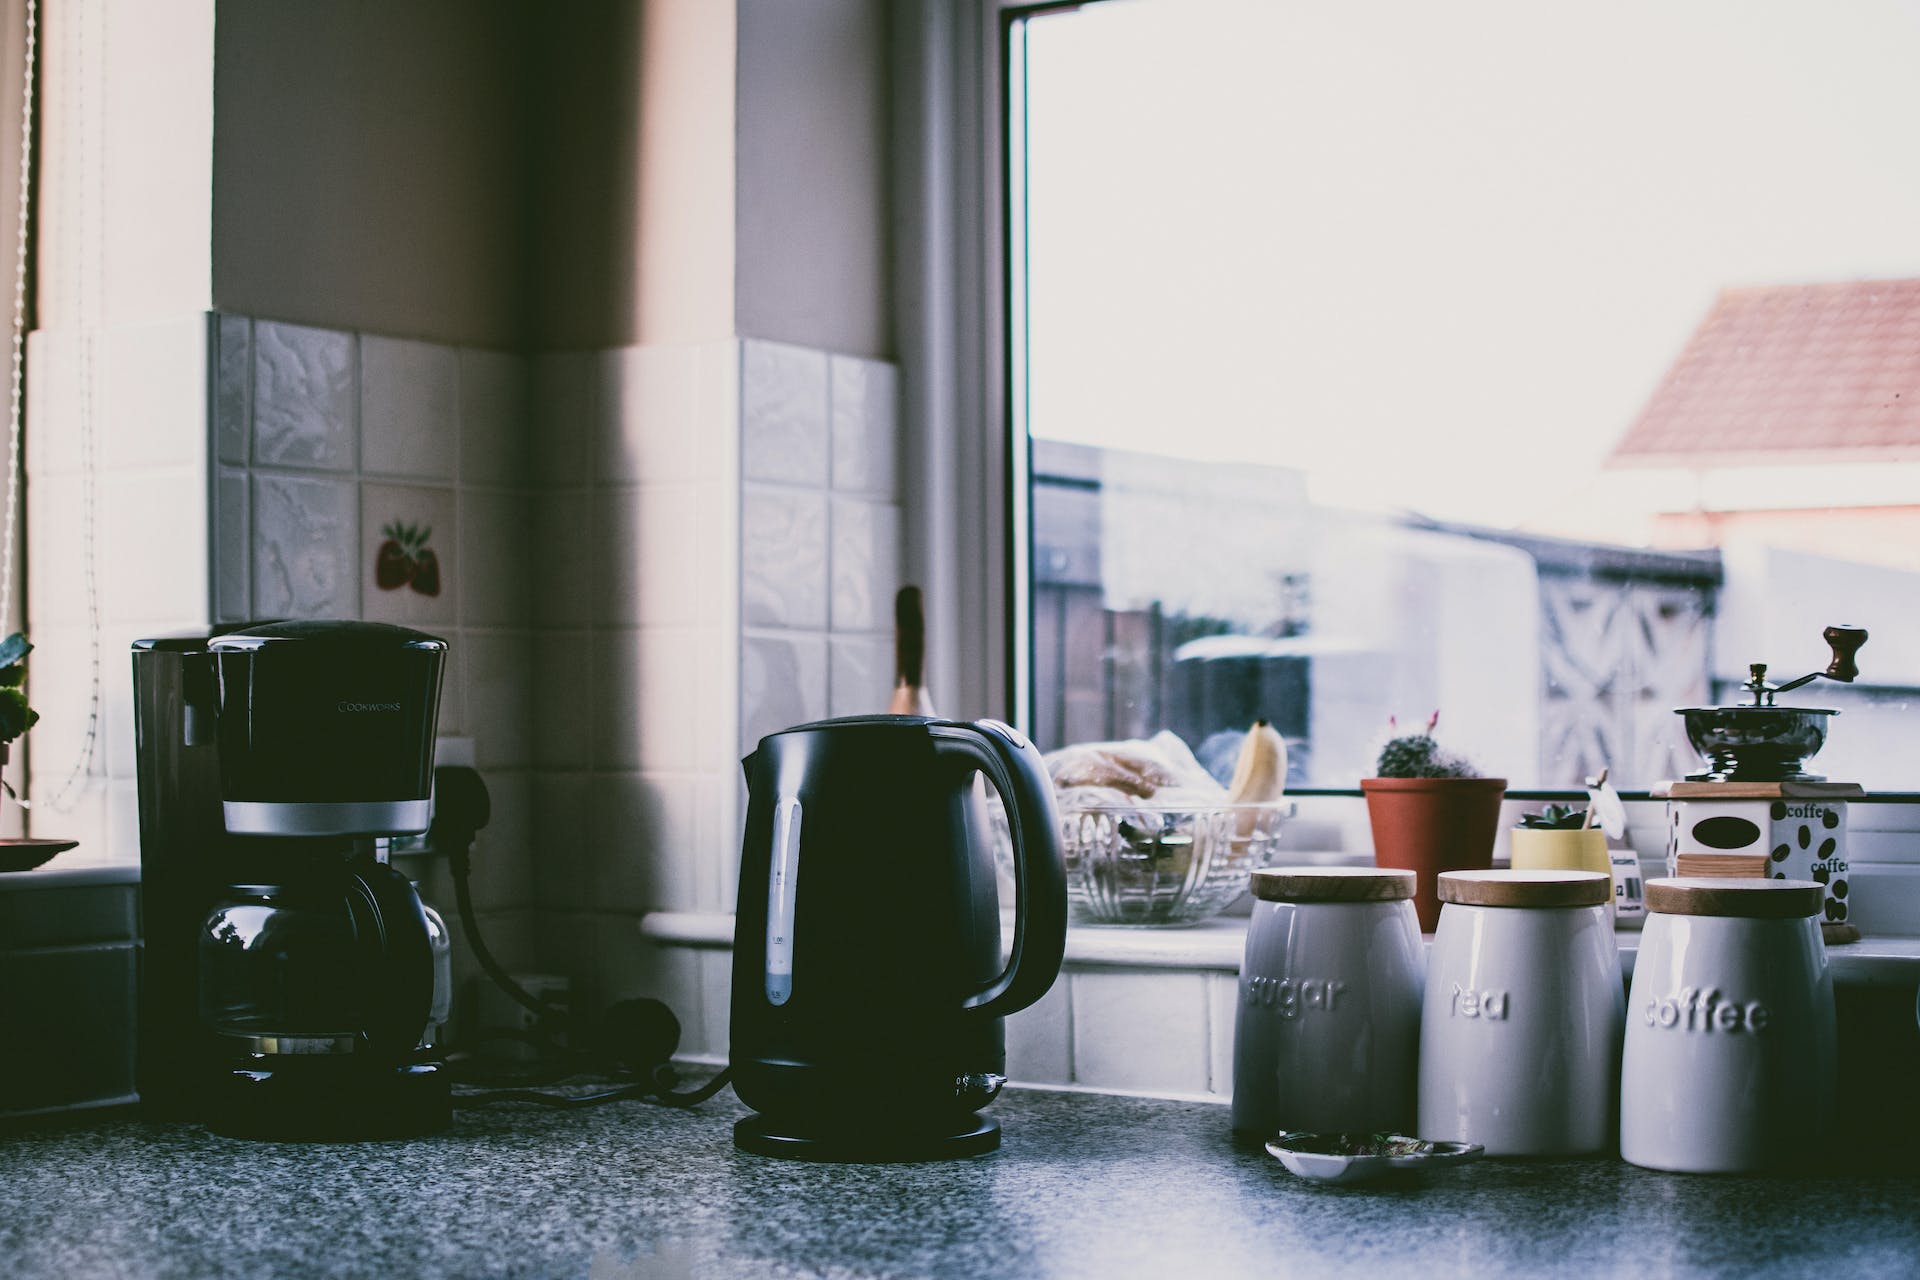 Kitchen countertop | Source: Pexels